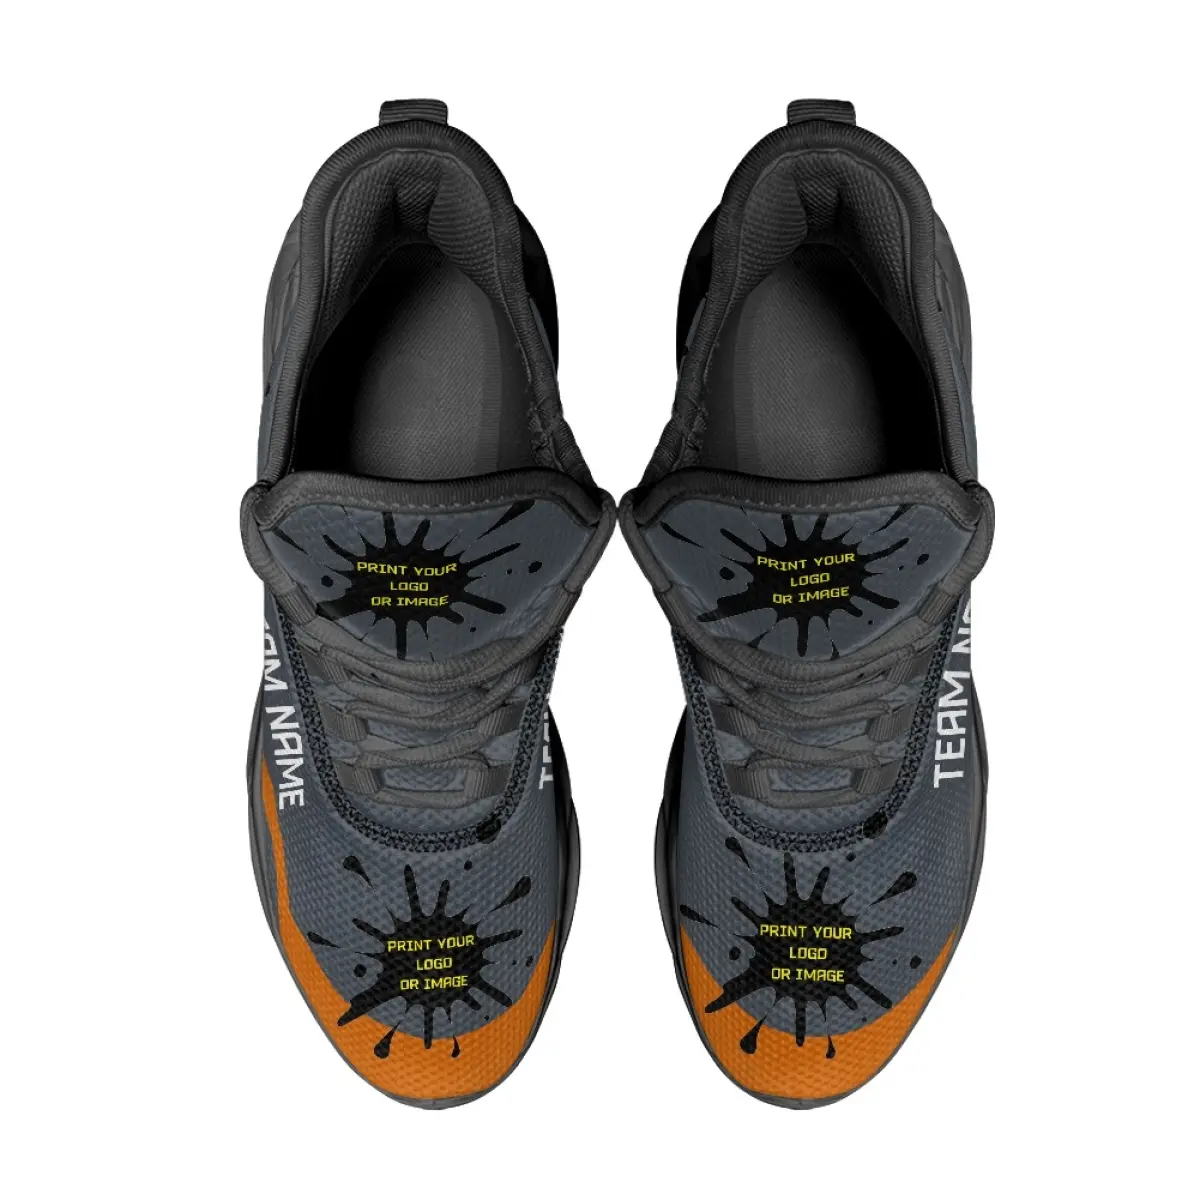 אישית אופנה סניקרס מקרית Mlbe בולטימור ספורט נעל חיצוני ריצת ההליכה עמיד הליכה סגנון נעלי גברים של אוריולס נעליים